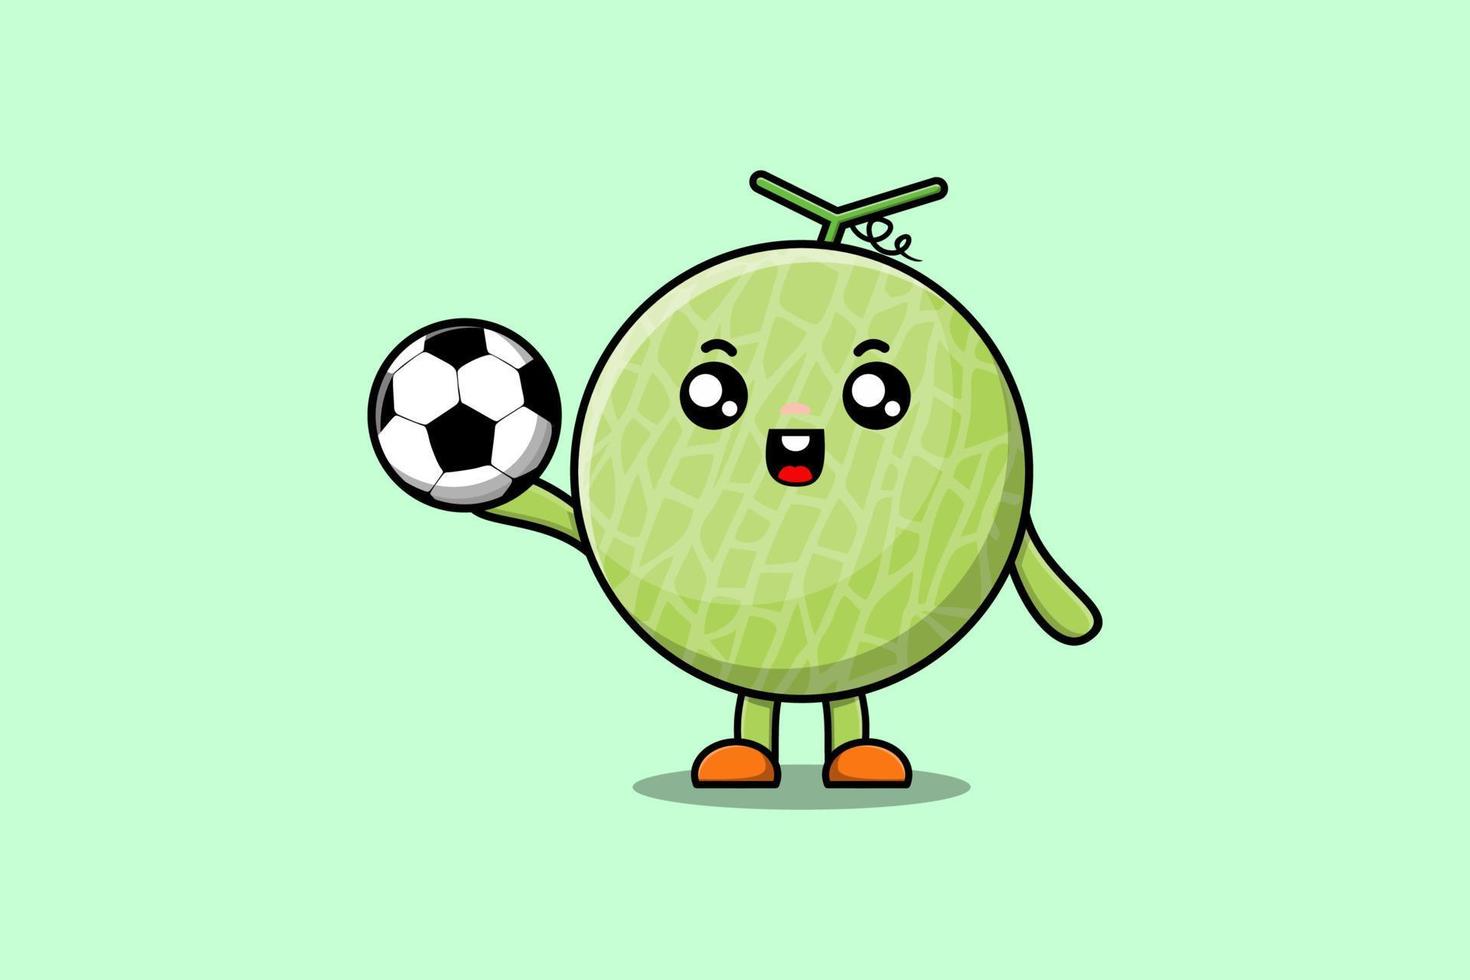 personnage de dessin animé mignon melon jouant au football vecteur